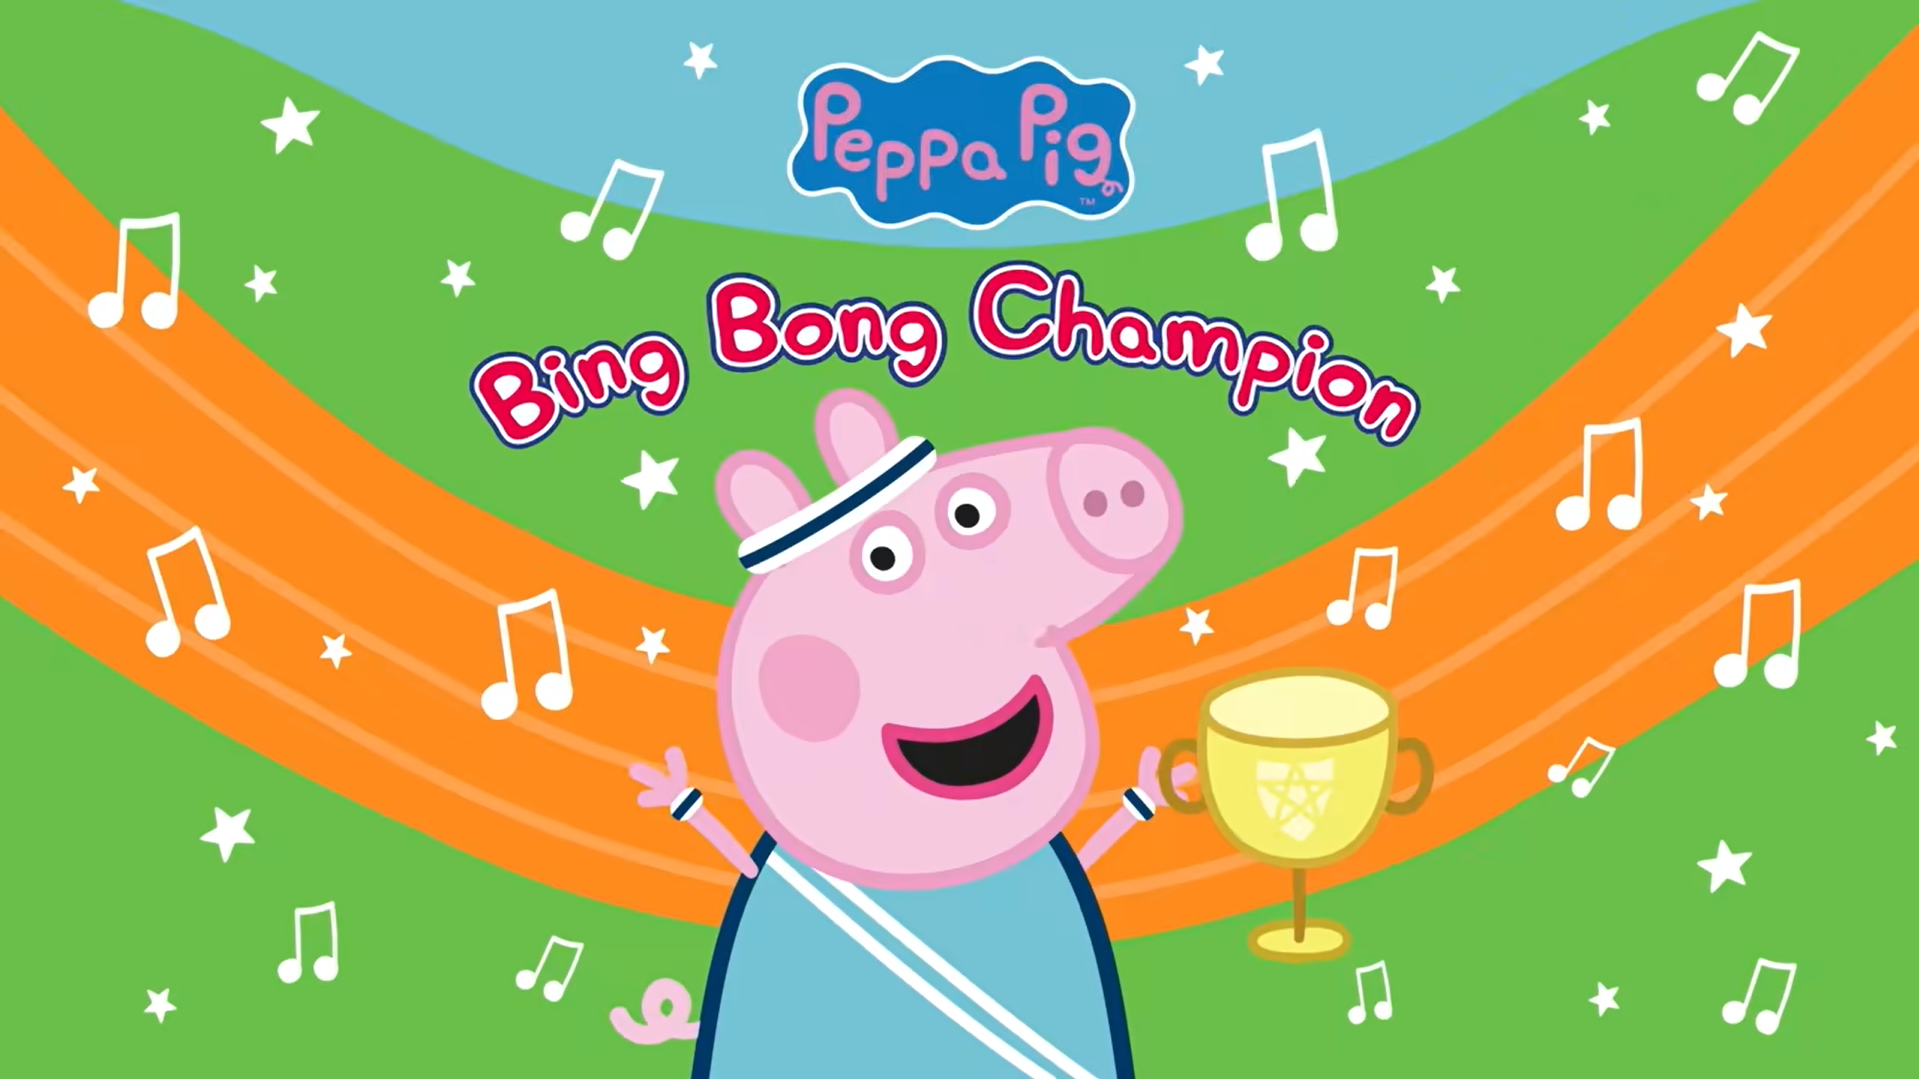 Bing Bong Champion song thumbnail